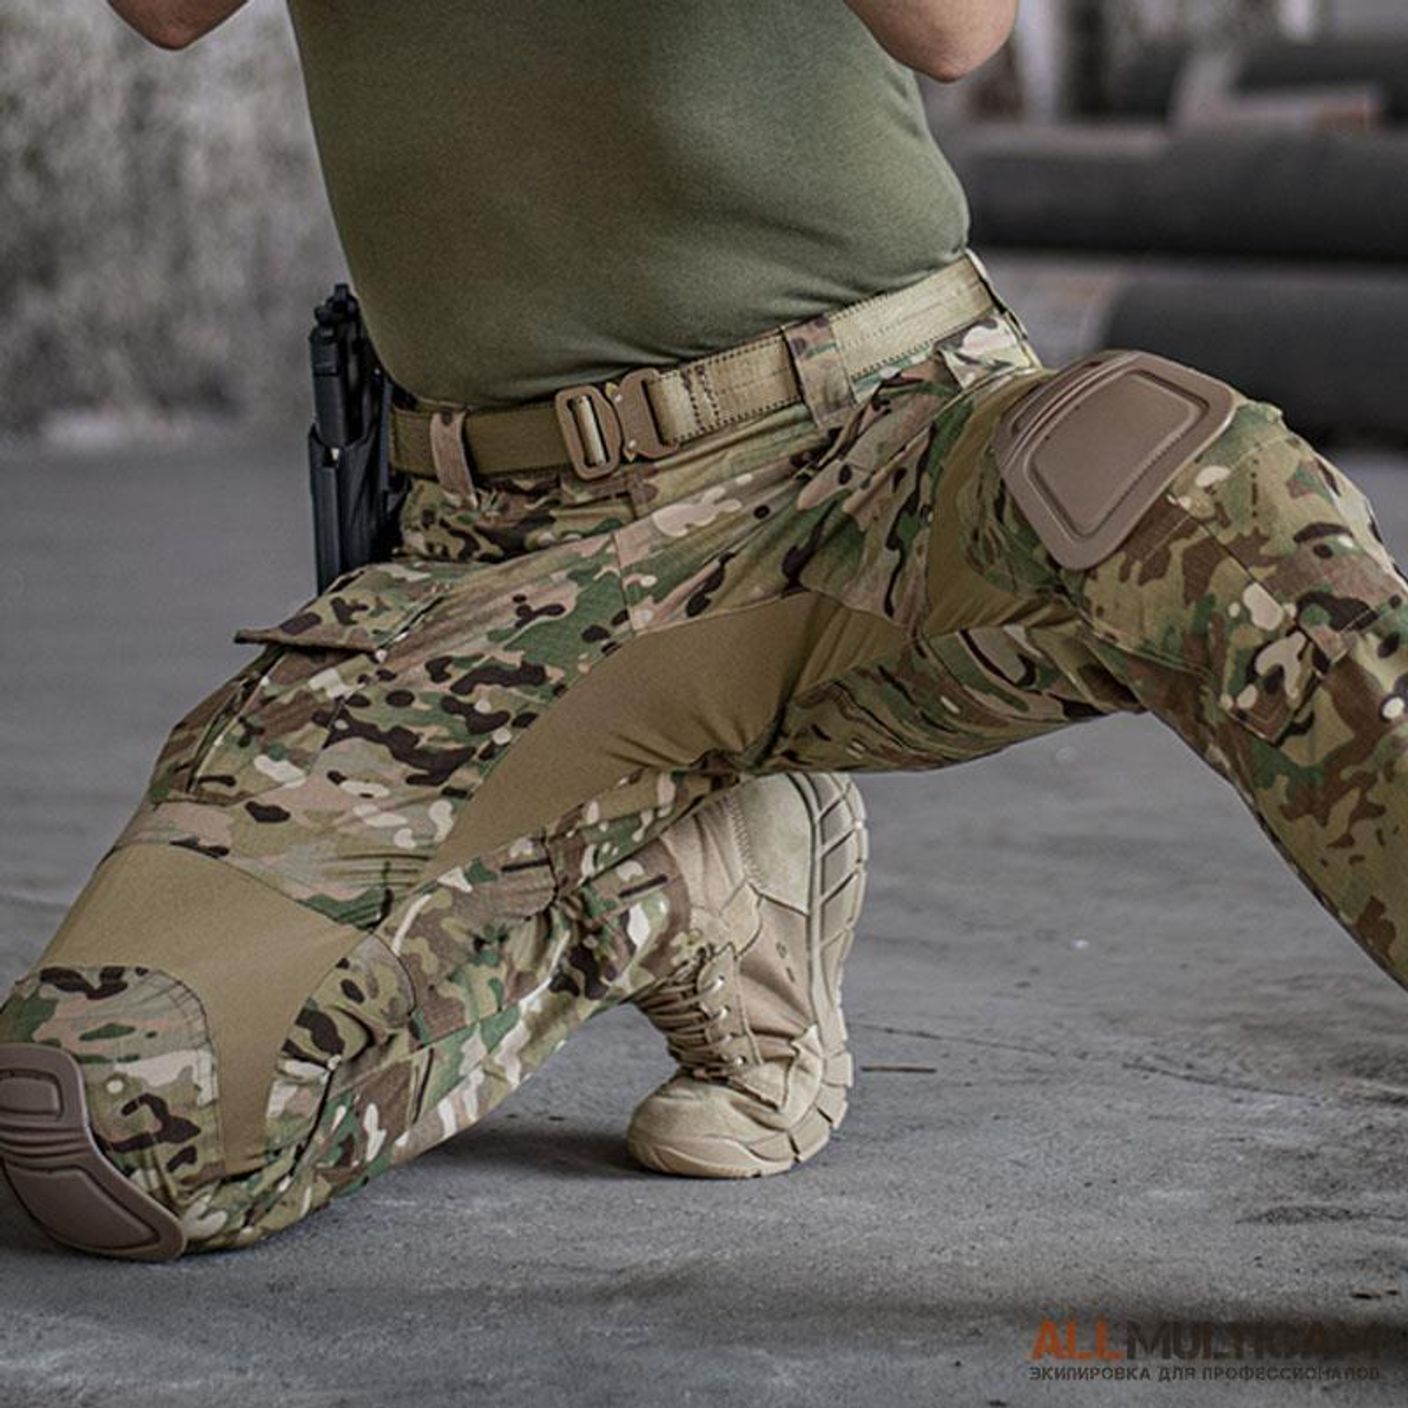 Какие ткани применяют при пошиве военных (тактических/боевых) брюк?